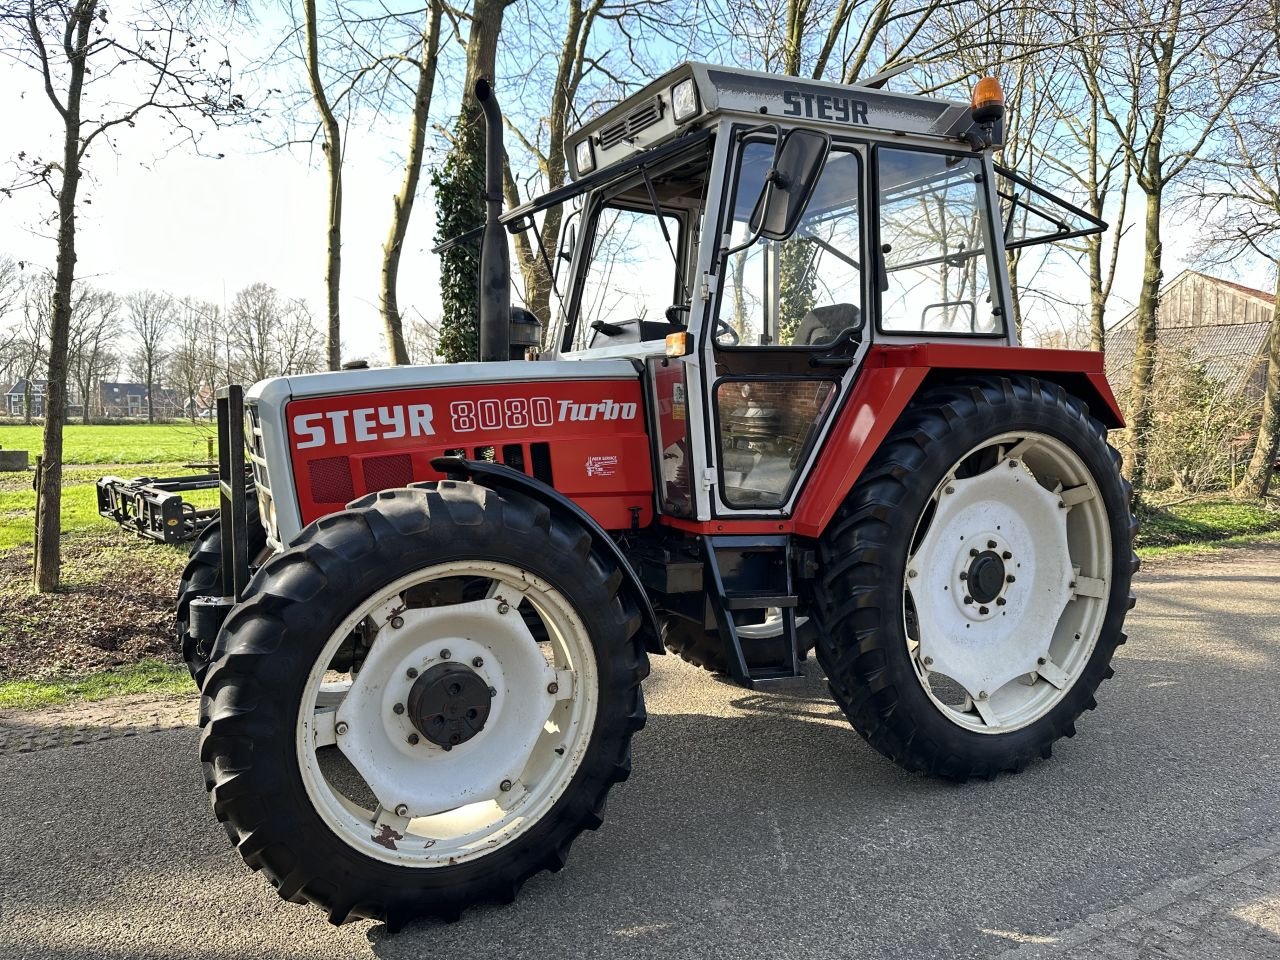 Traktor des Typs Steyr 8080 Turbo, Gebrauchtmaschine in Rossum (Bild 1)